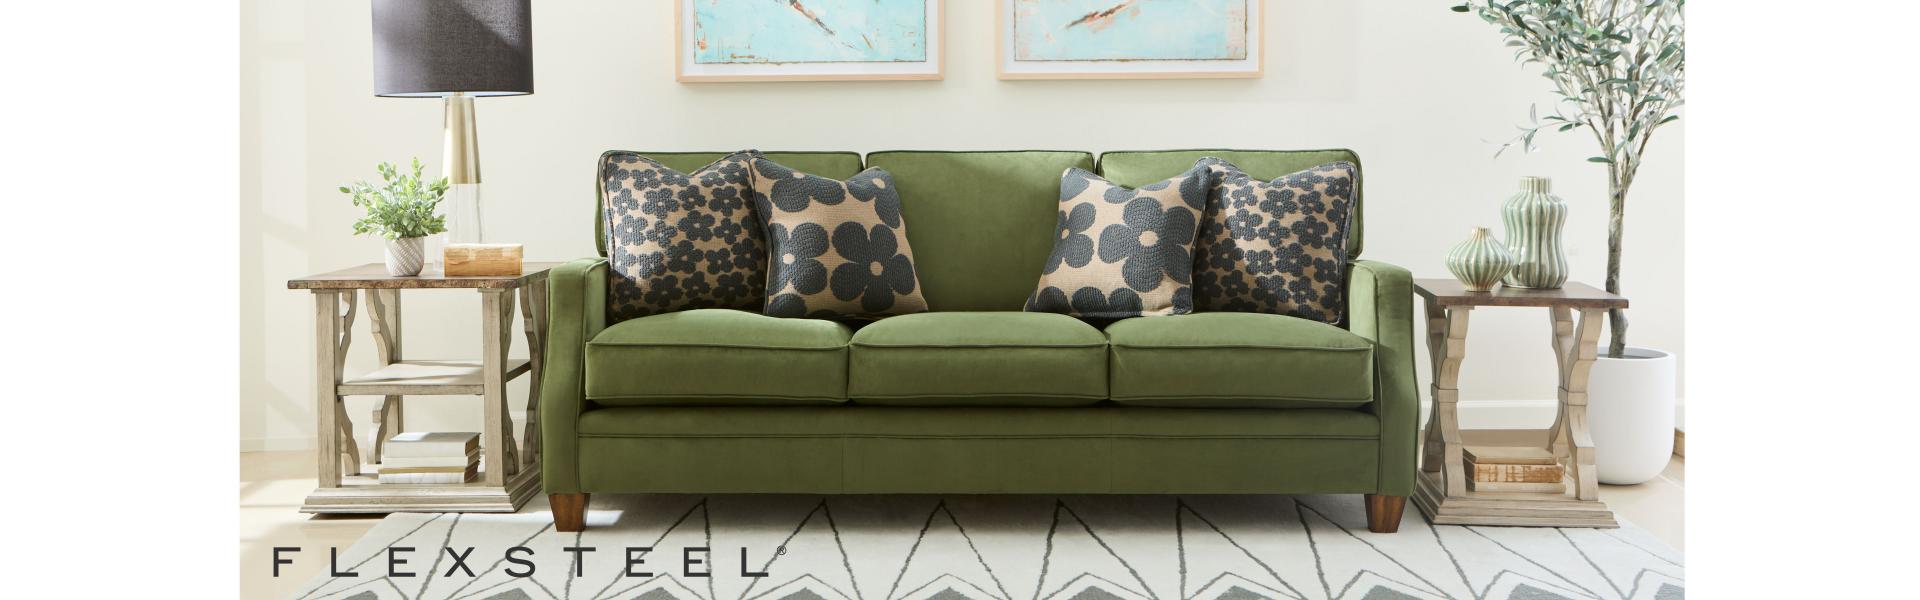 Flexsteel Upholstered Furniture